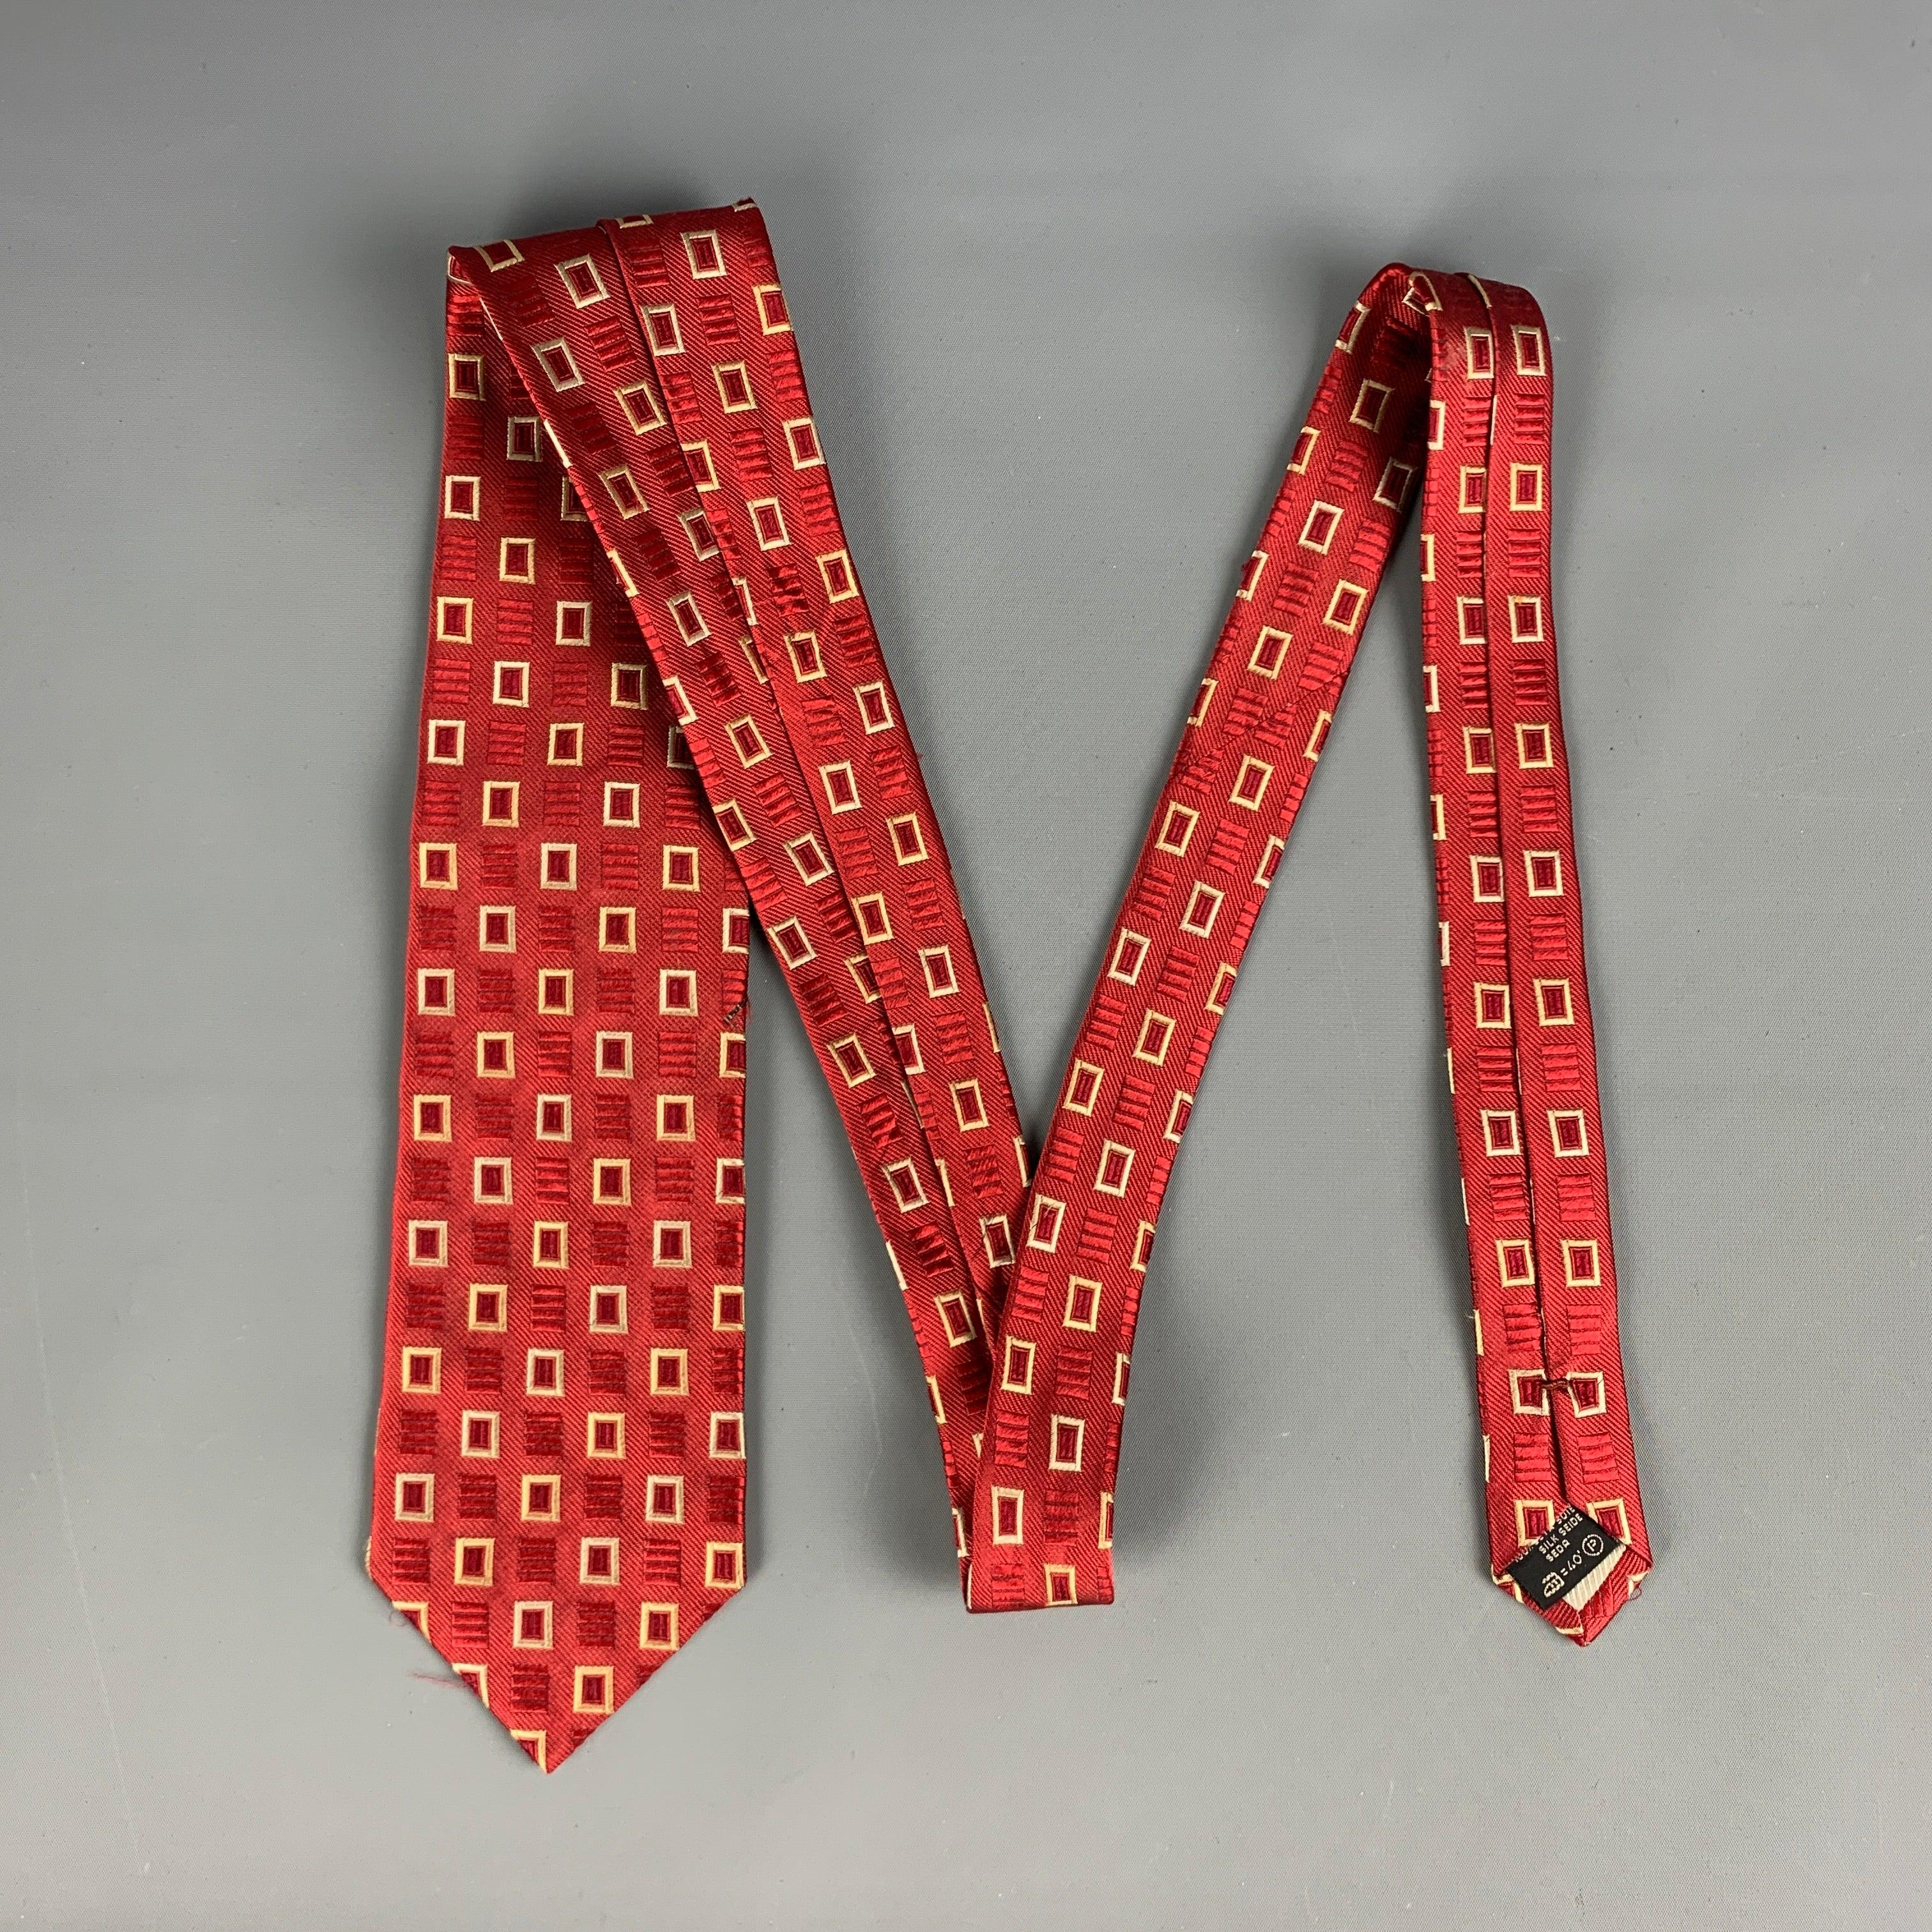 ERMENEGILDO ZEGNA Vintage-Krawatte in tiefem Rot mit quadratischem All-Over-Muster in Beige. 100% Seide. Hergestellt in Italien.
Sehr guter gebrauchter Zustand
 

Abmessungen: 
  Breite: 3 Zoll Länge: 57 Zoll 


  
  
 
Sui Generis-Referenz: